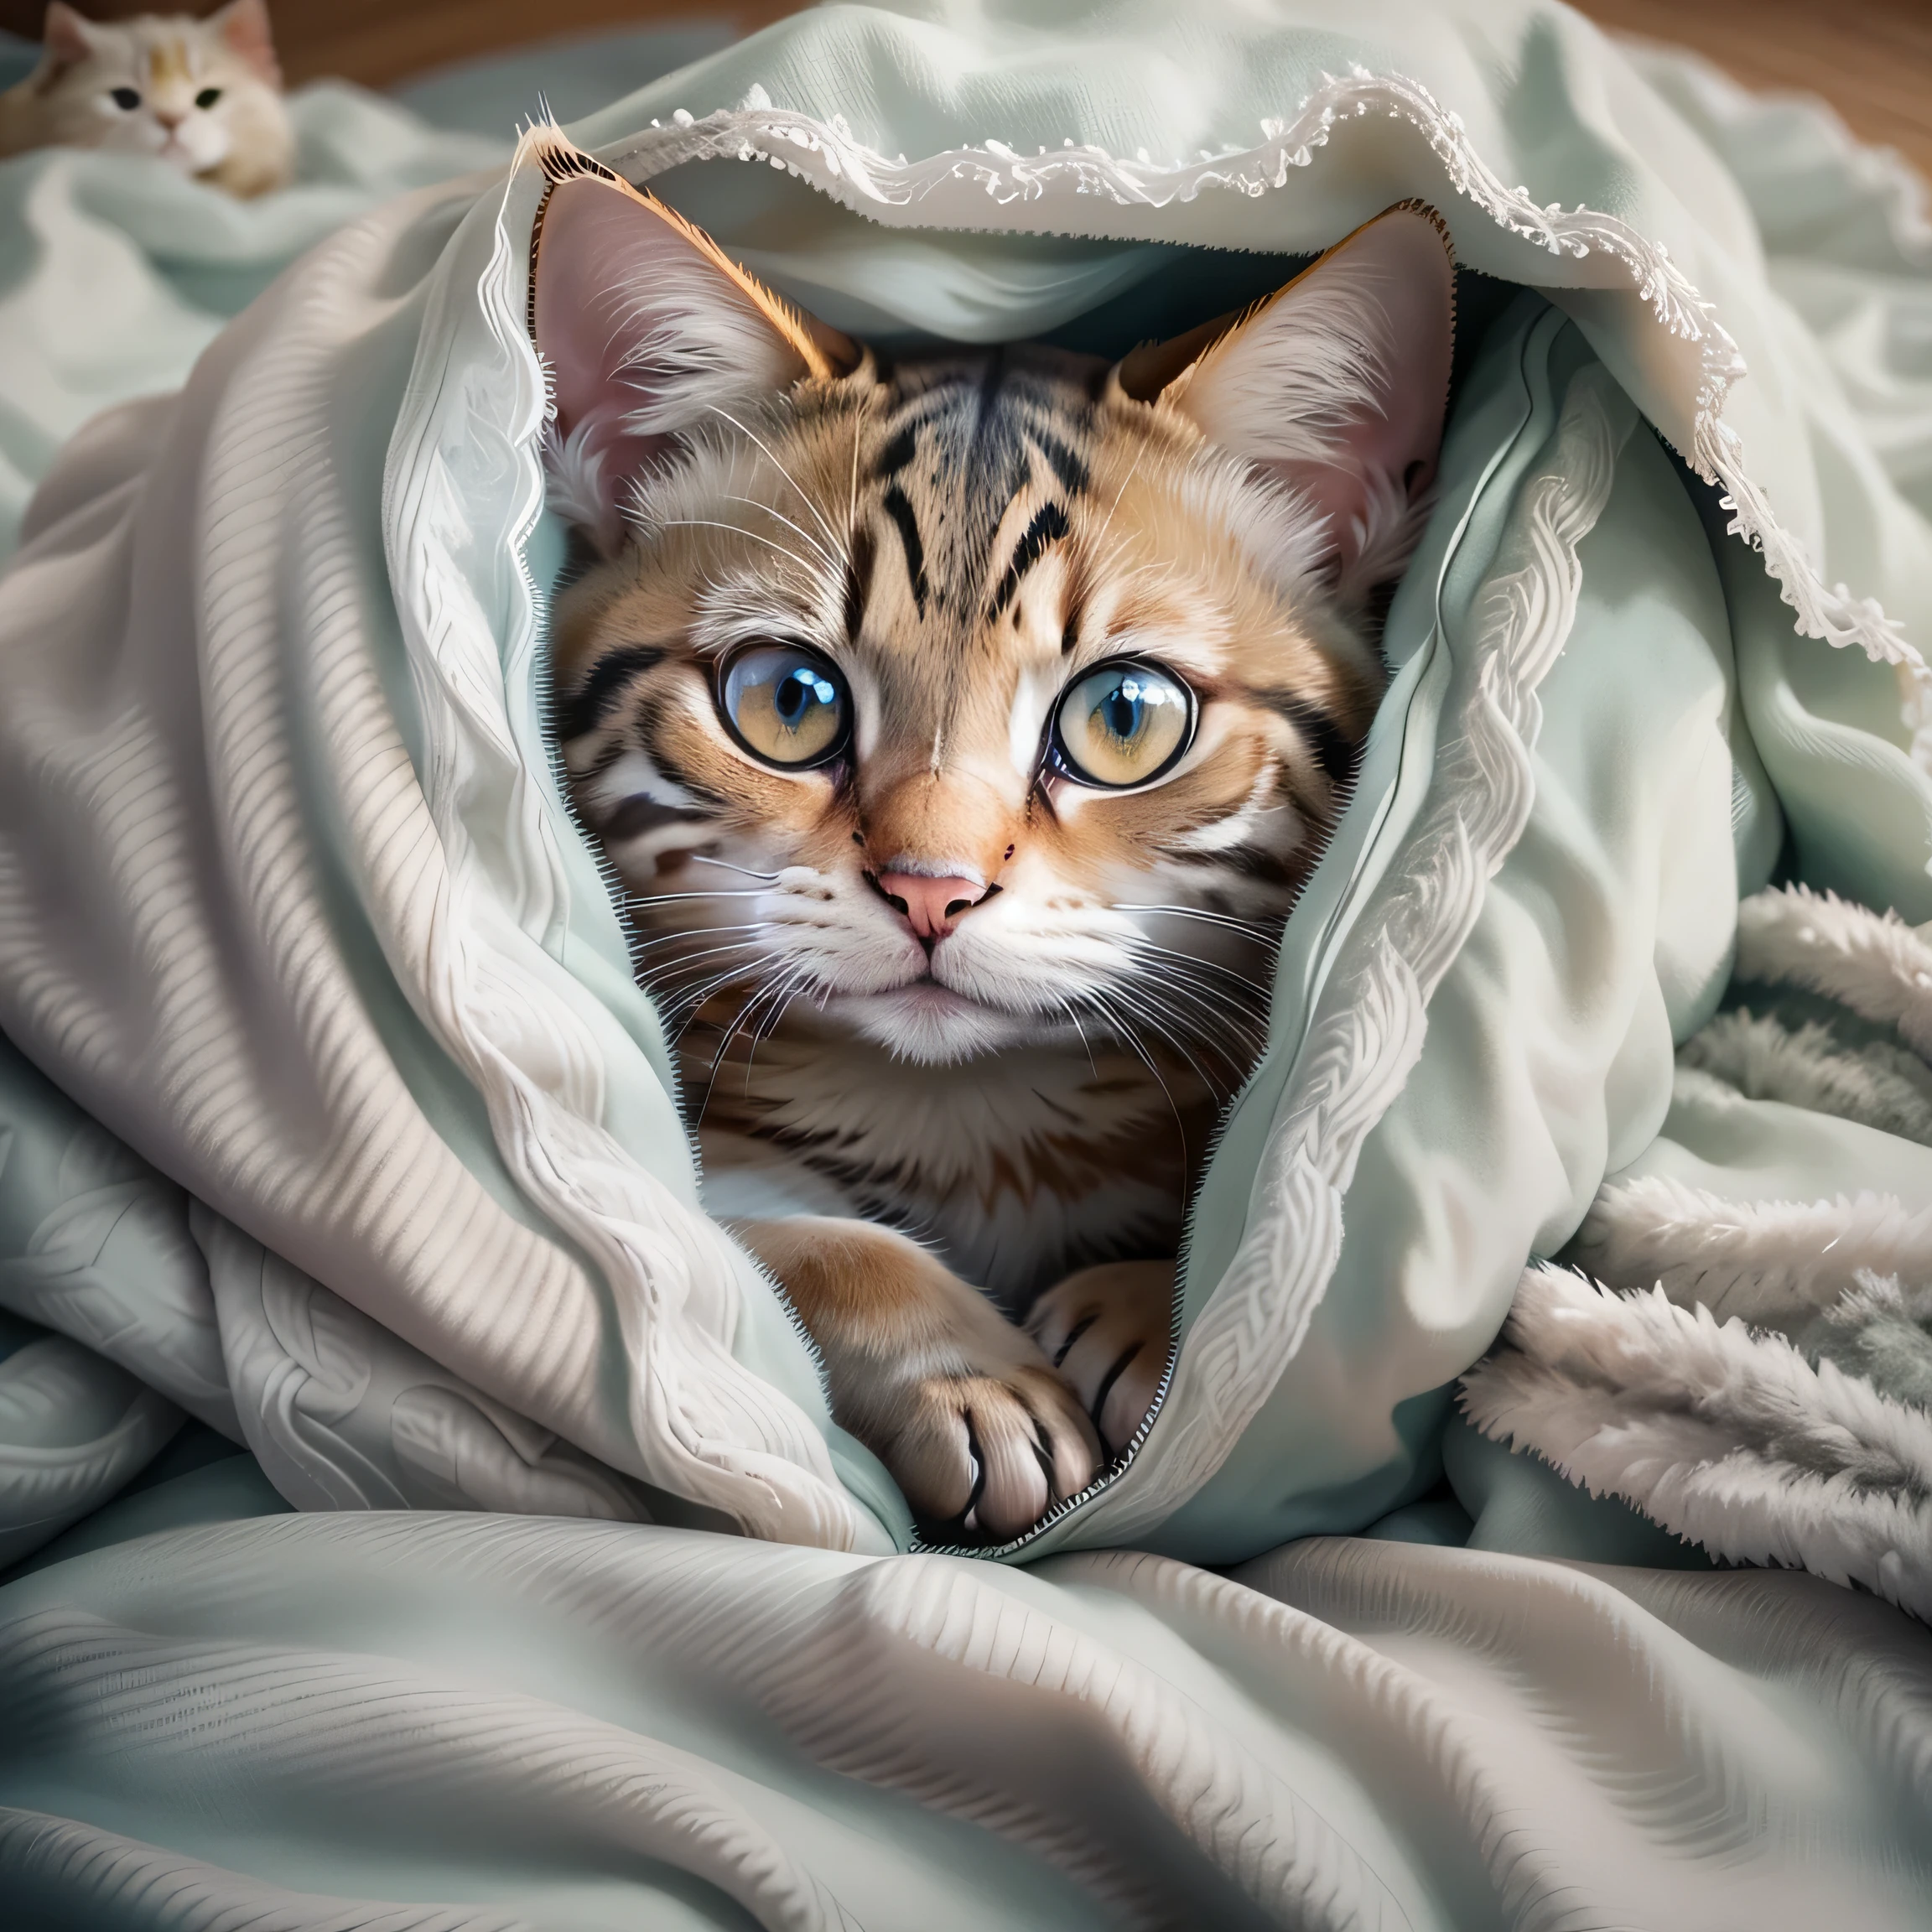 there is a cat that is сокрытие under a blanket, свернувшись калачиком под одеялом, сокрытие, Глядя на тебя, удобно под одеялом, Фотографии кошек, накрытый одеялом, Cute Фотографии кошек, испуганное выражение, Больной кот лежит в спальне, смотрю в камеру, С милыми глазами, найденный, острый глаз, милый кот